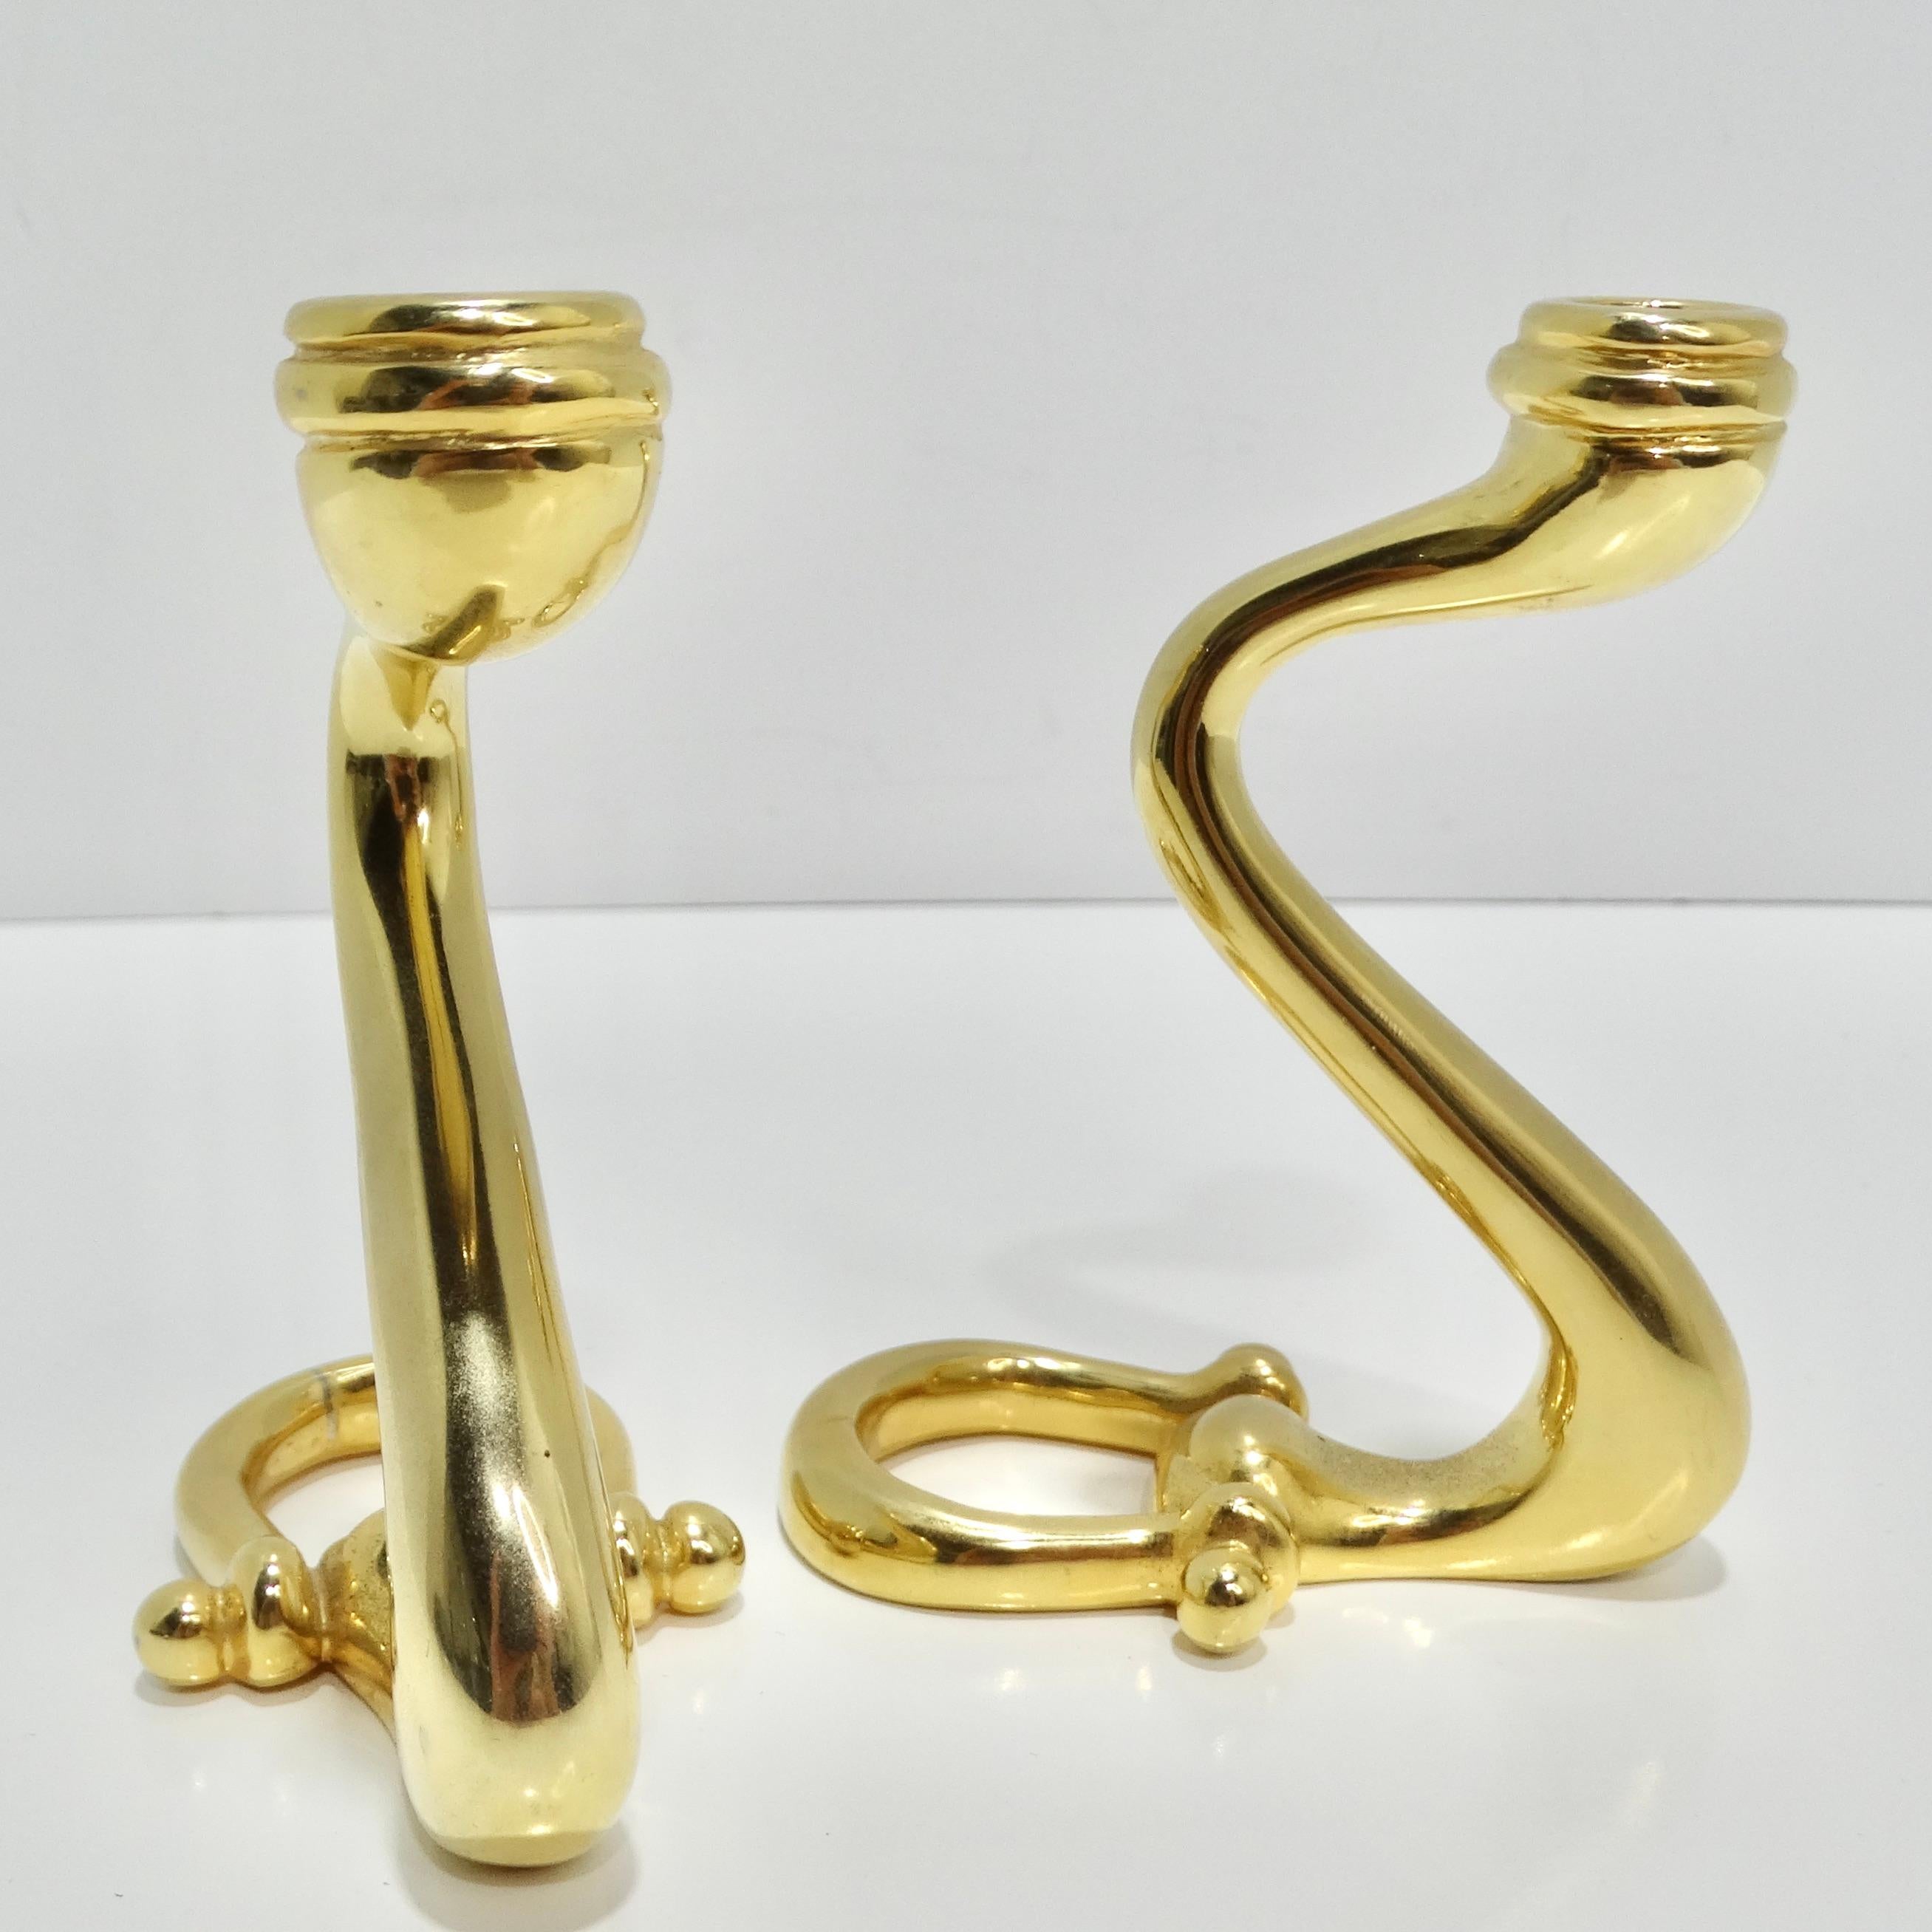 Die Gucci 1980s Brass Horse Bit Candle Holders sind eine fesselnde und luxuriöse Ergänzung Ihrer Dekorationssammlung. Die aus Messing gefertigten Kerzenhalter mit goldfarbener Oberfläche strahlen Eleganz und Raffinesse aus.

Die Kerzenhalter haben